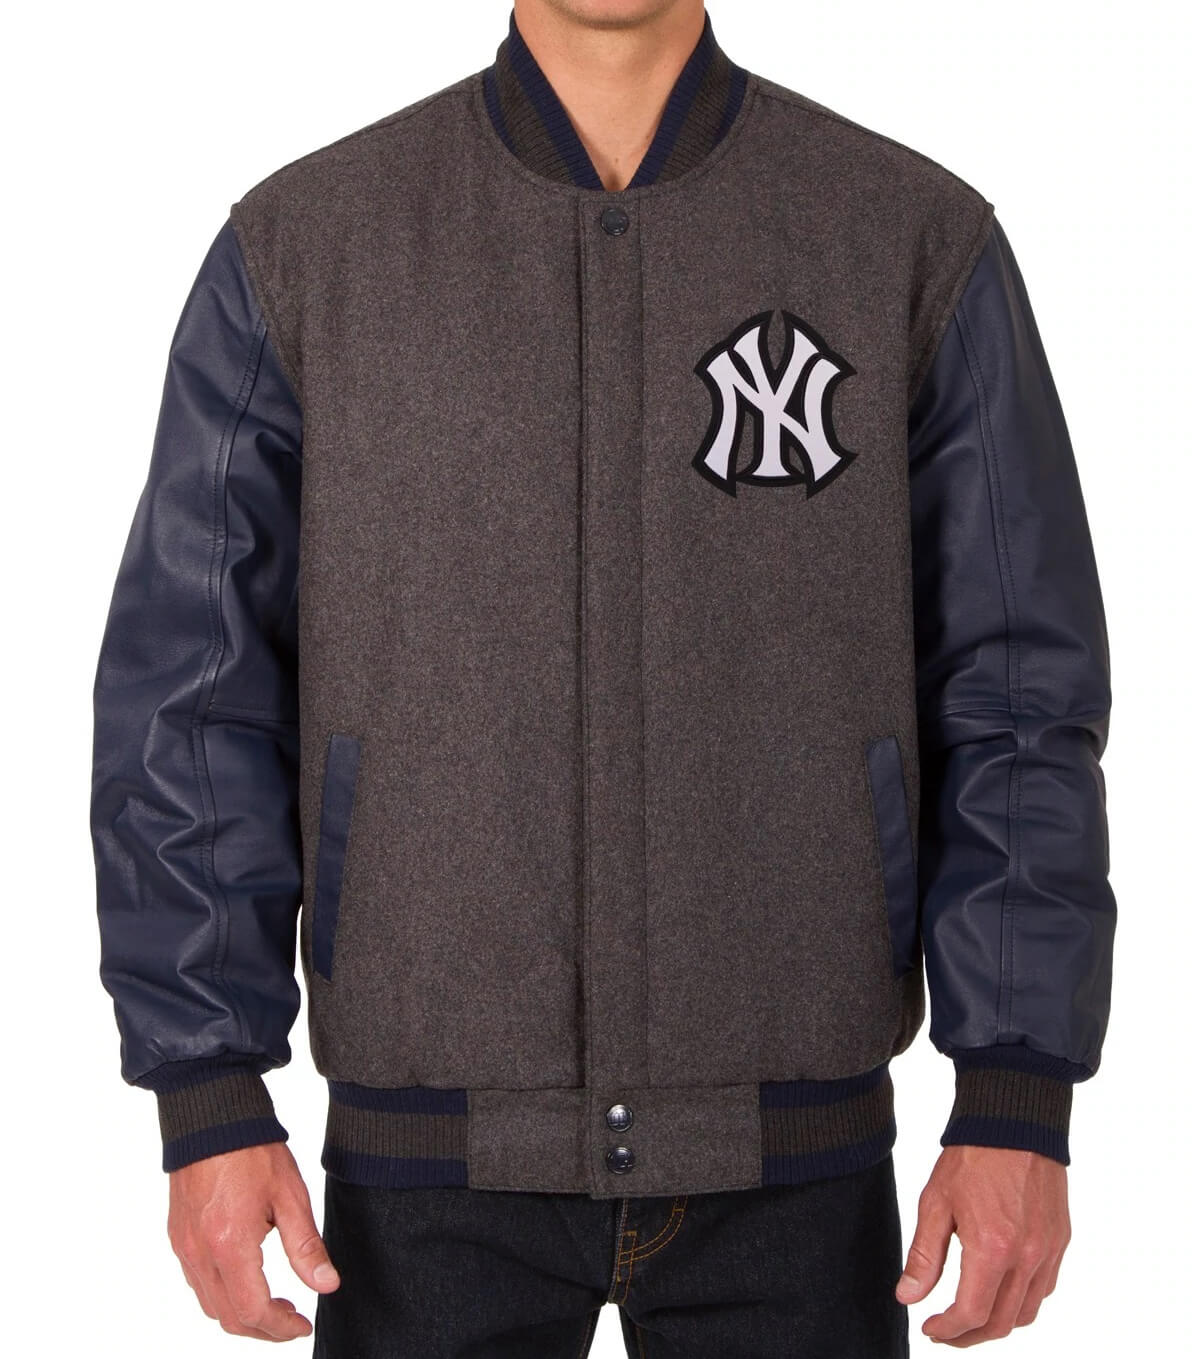 JH Design New York Islanders Varsity Blue Reversible Wool Jacket, Men's, XL